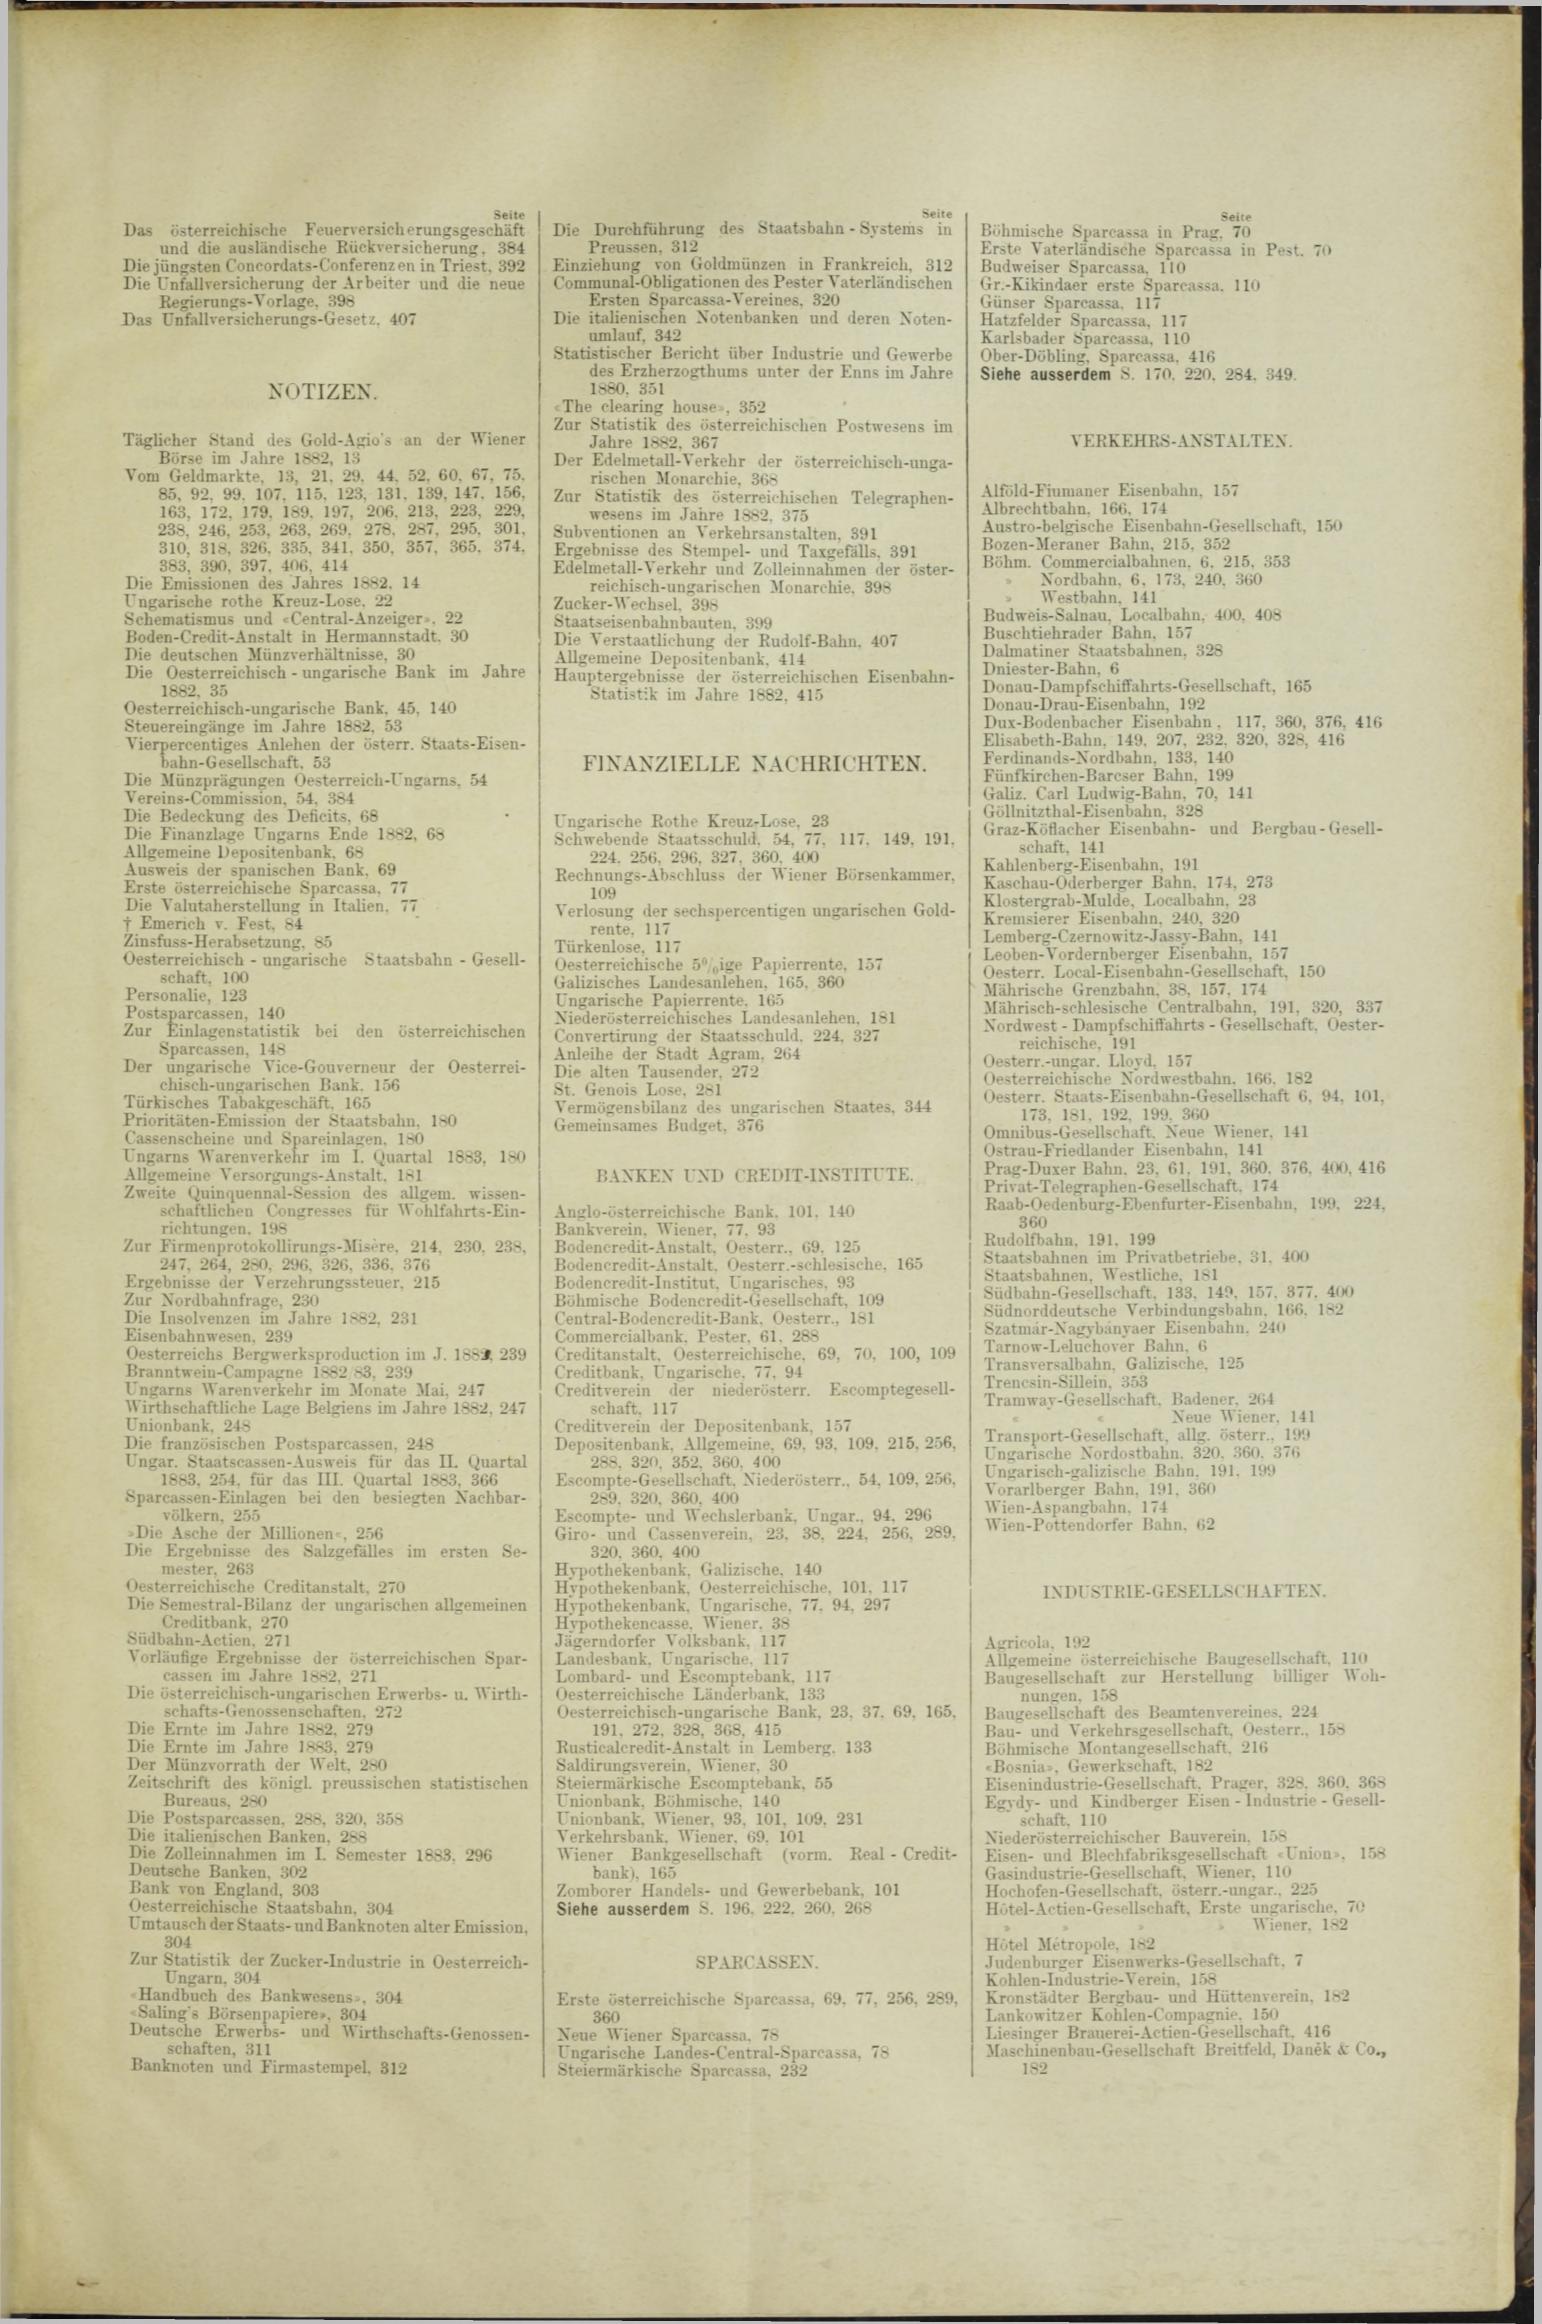 Der Tresor 04.10.1883 - Seite 11